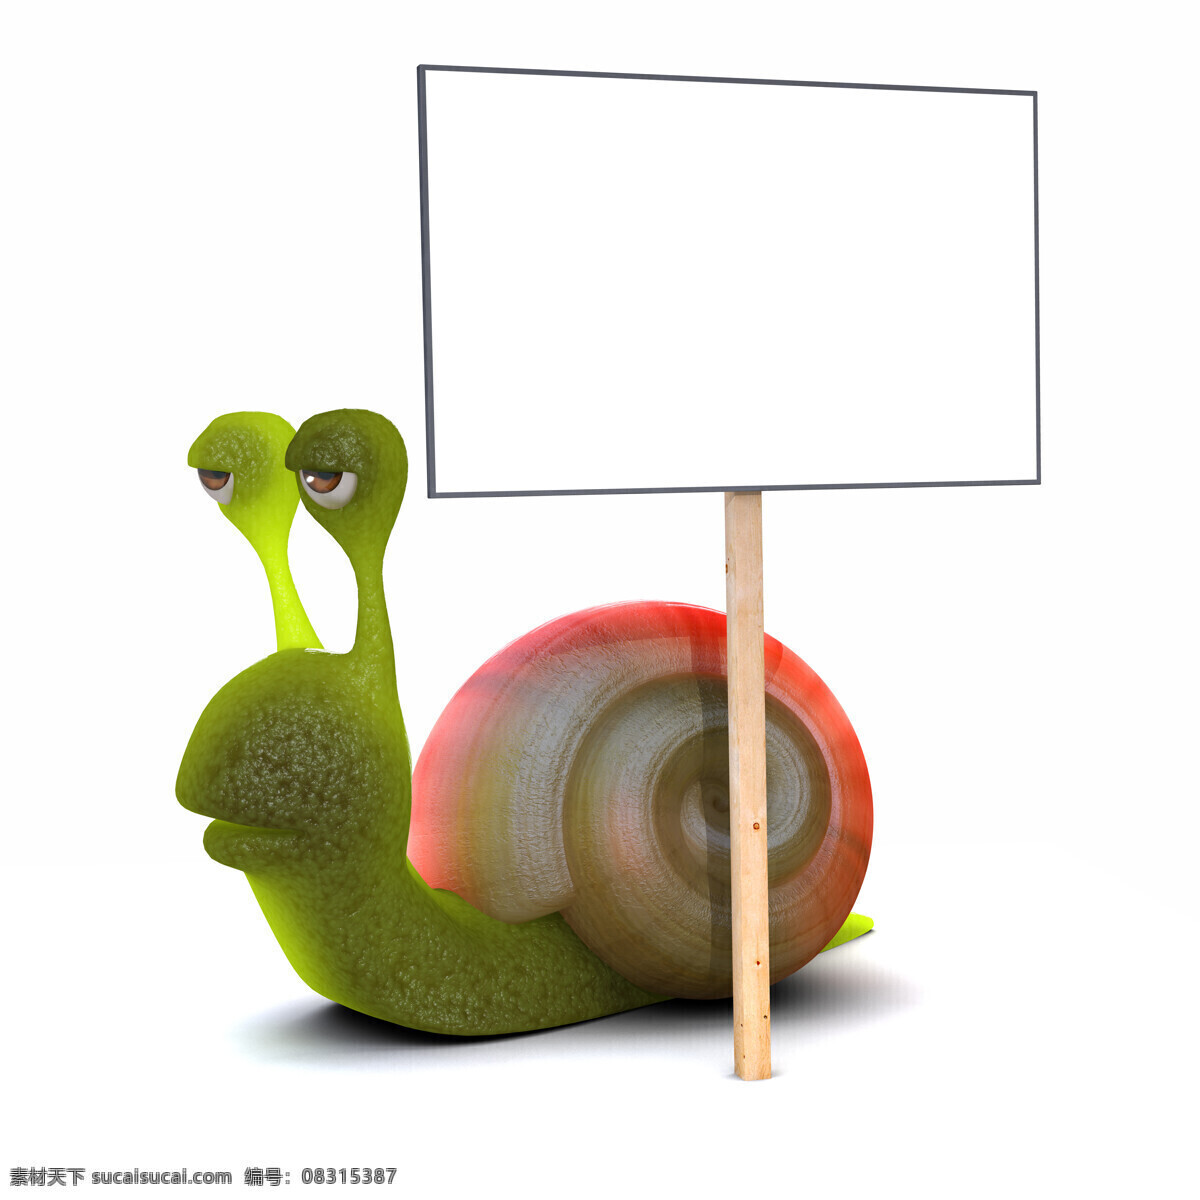 广告牌 蜗牛 动物 爬行 牌子 陆地动物 生物世界